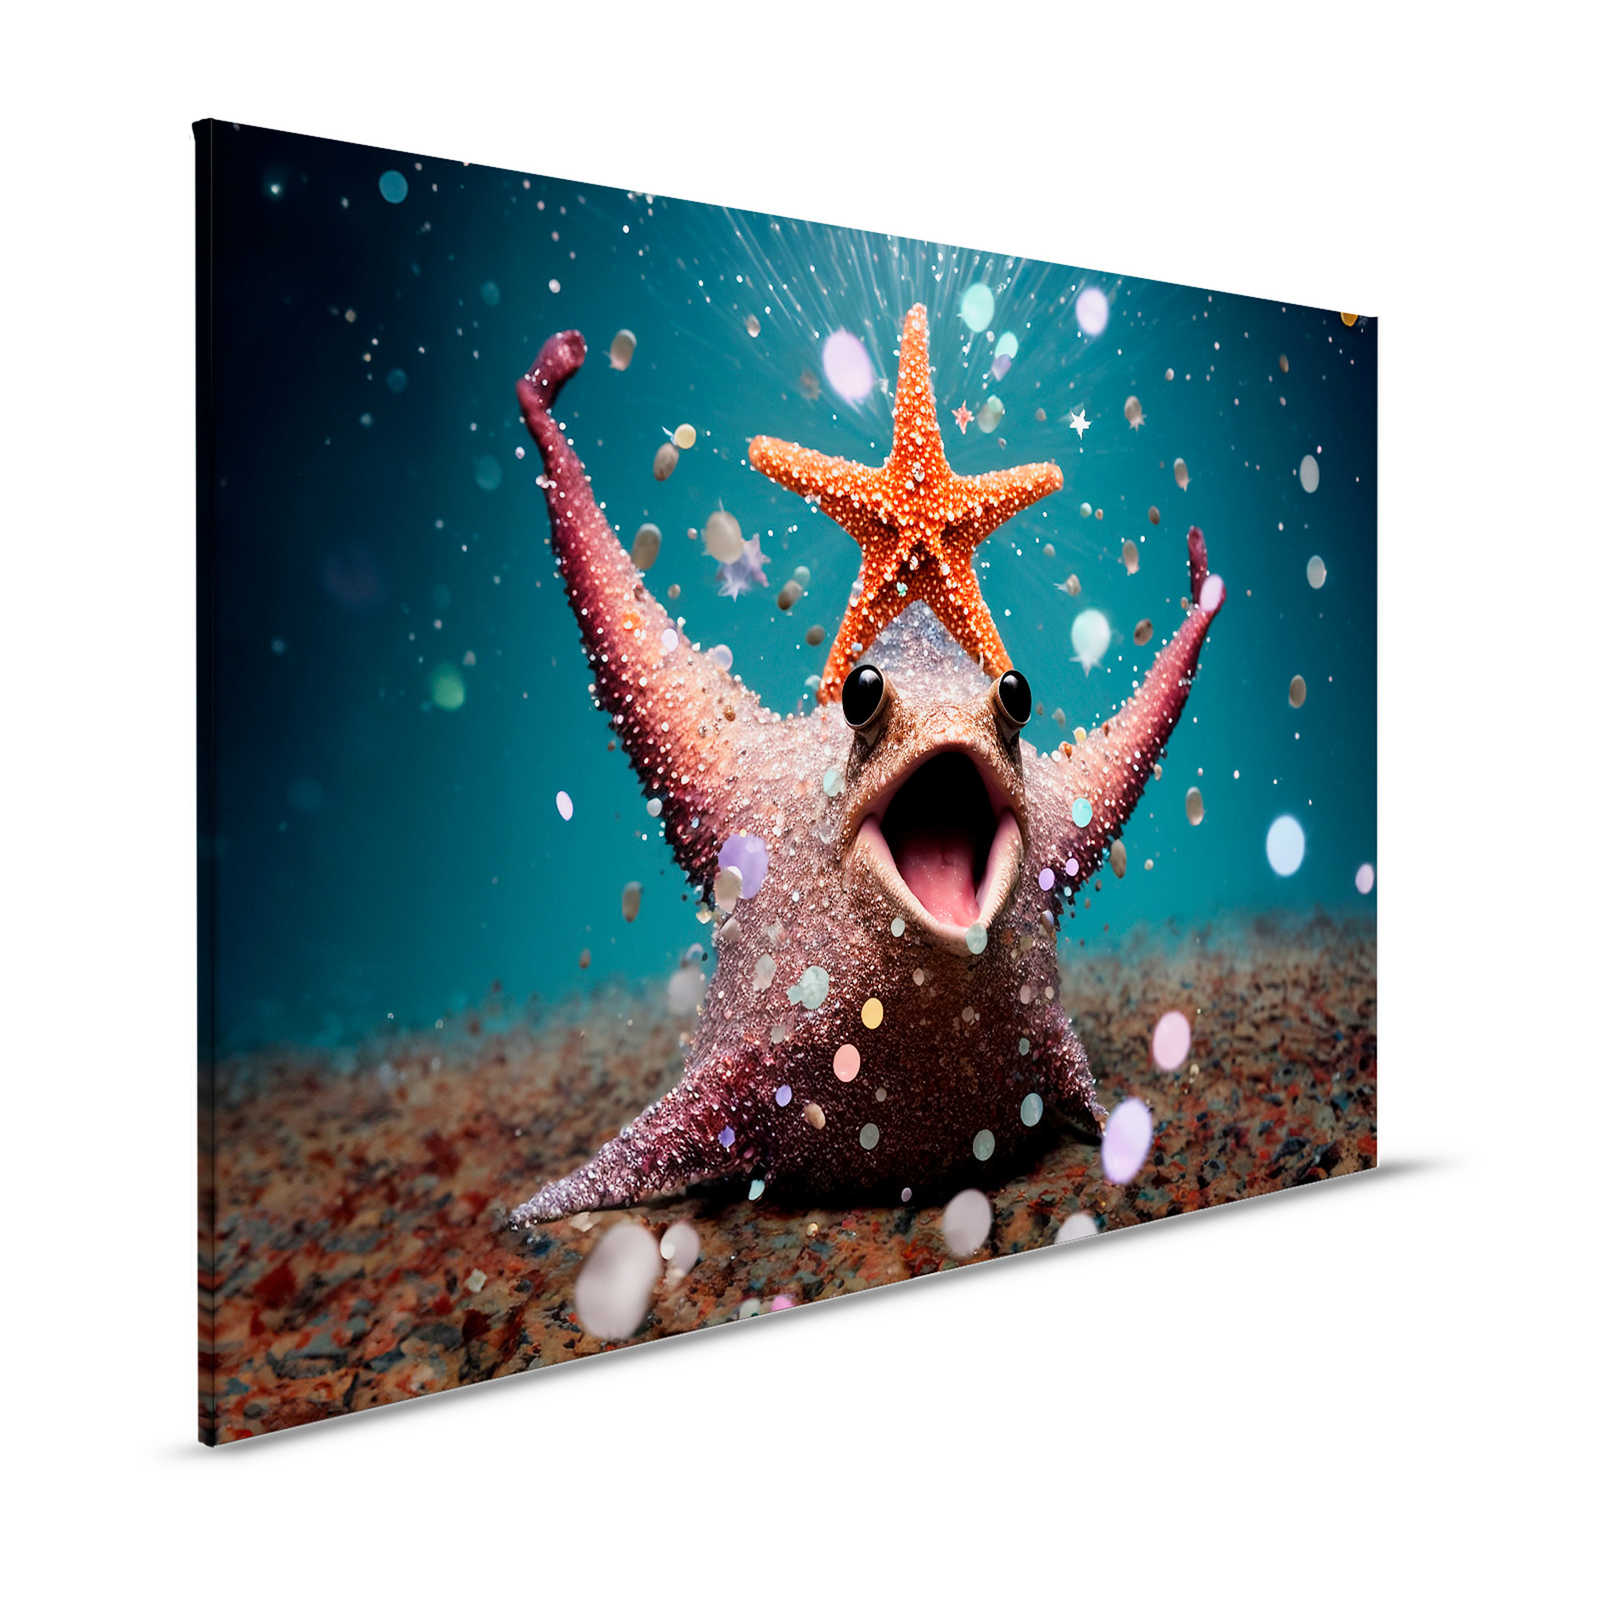 Toile KI »party starfish« - 120 cm x 80 cm
